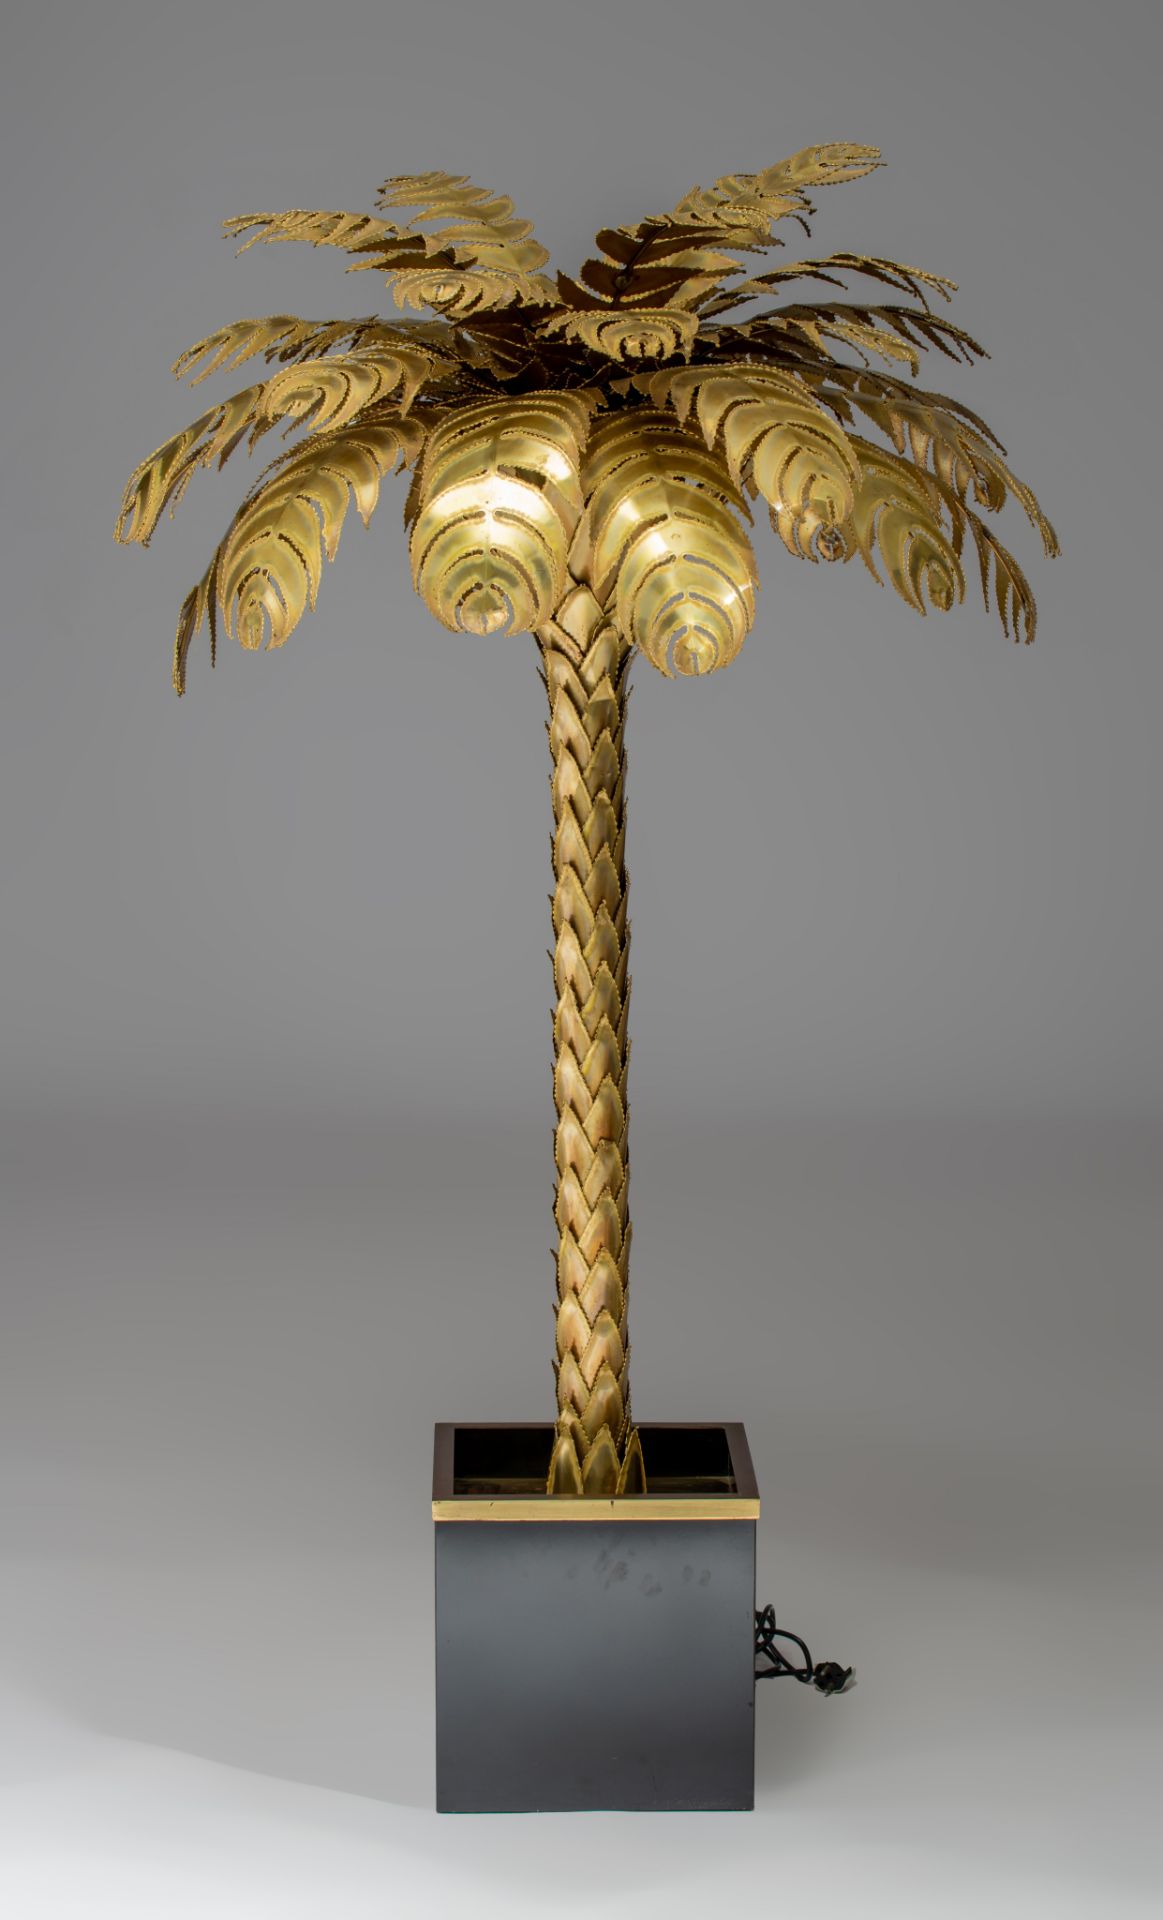 A vintage brass design Palm Tree lamp by Maison Jansen, Paris, H 155 cm - Image 4 of 10